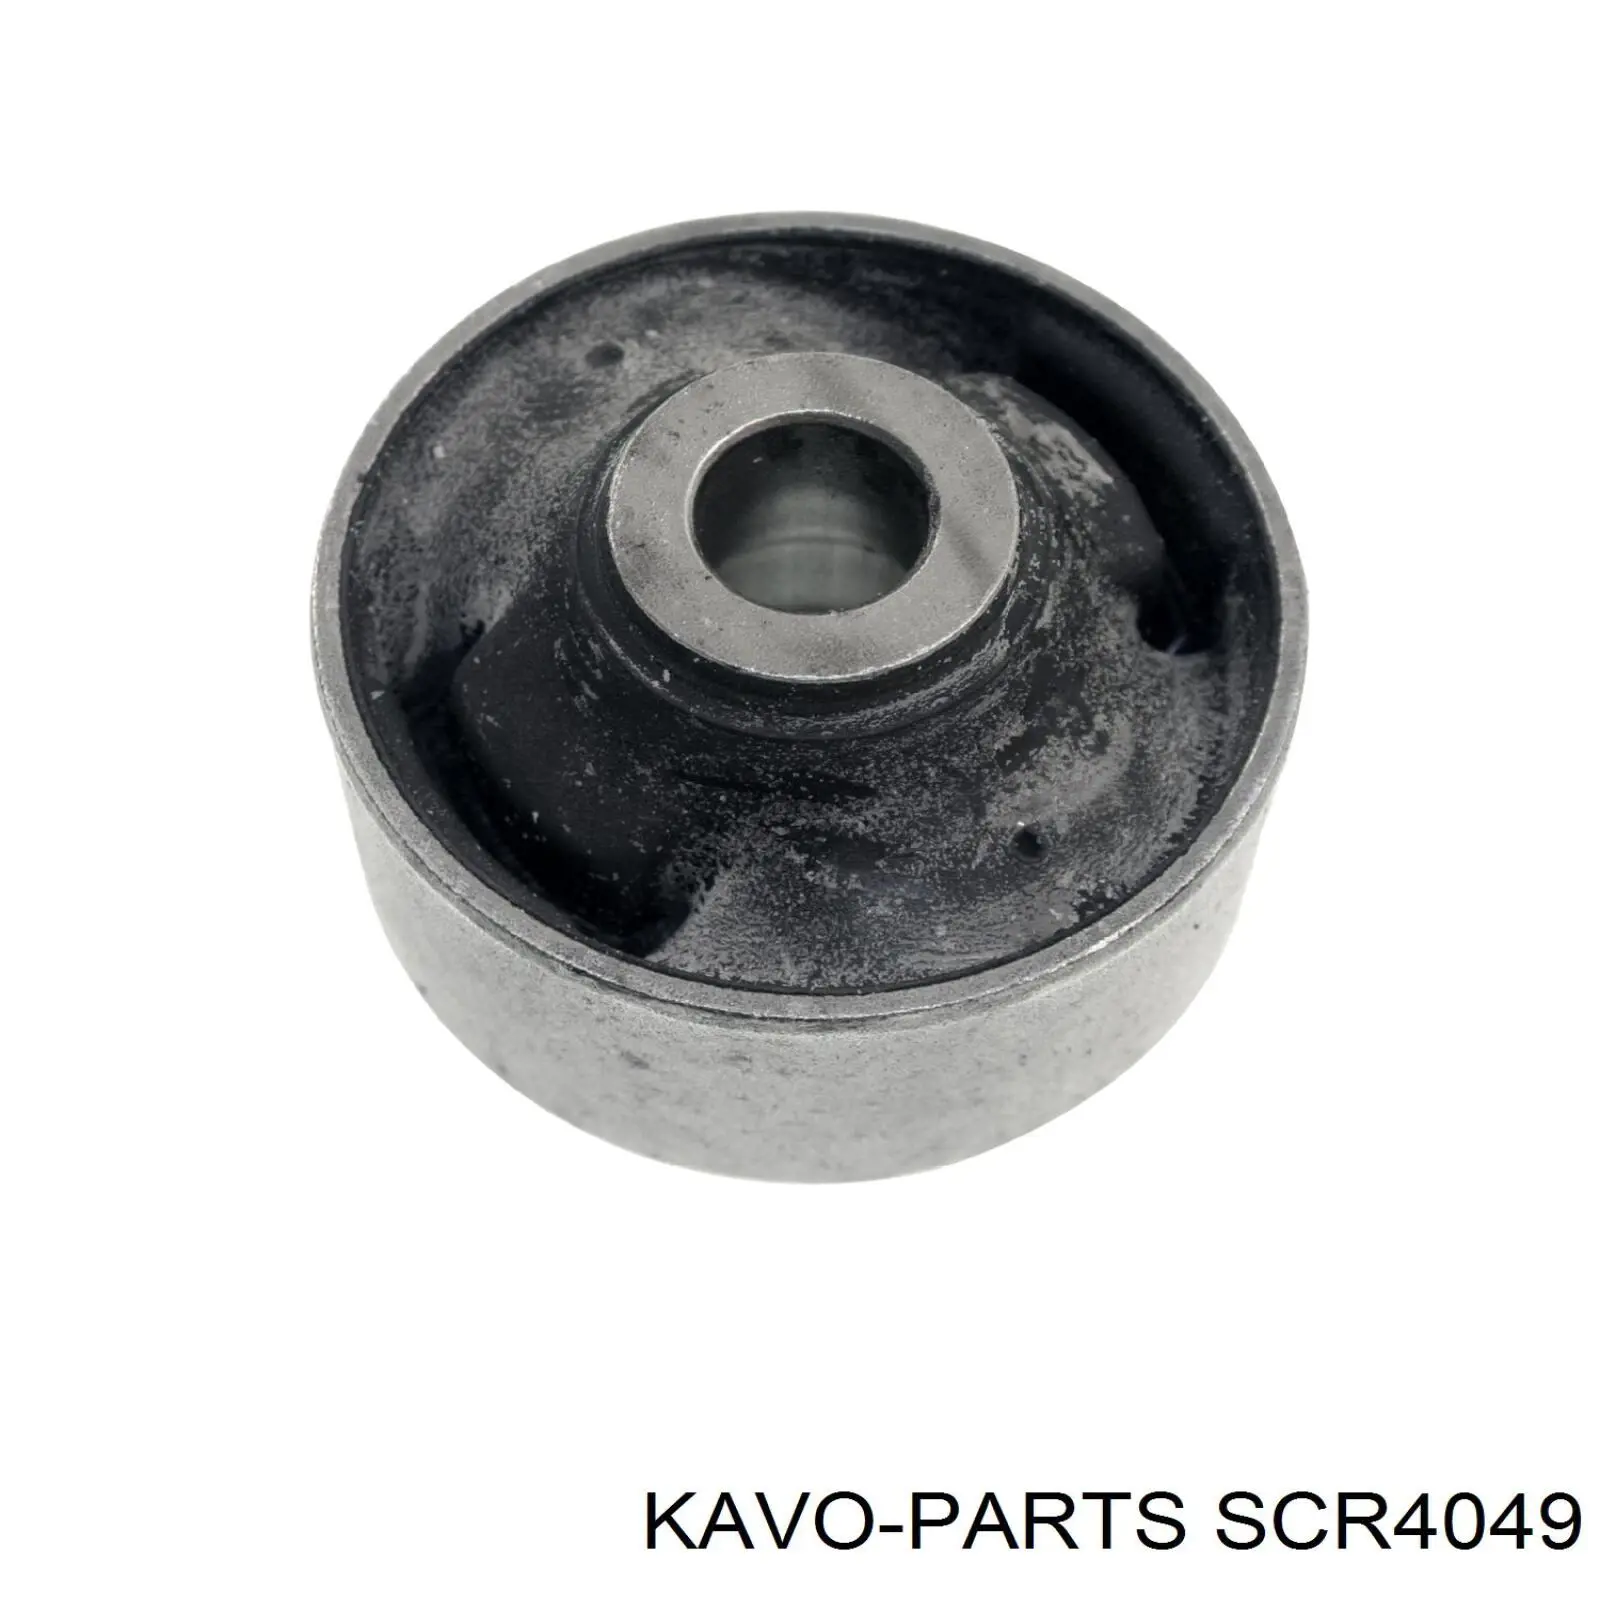 SCR-4049 Kavo Parts silentblock de suspensión delantero inferior